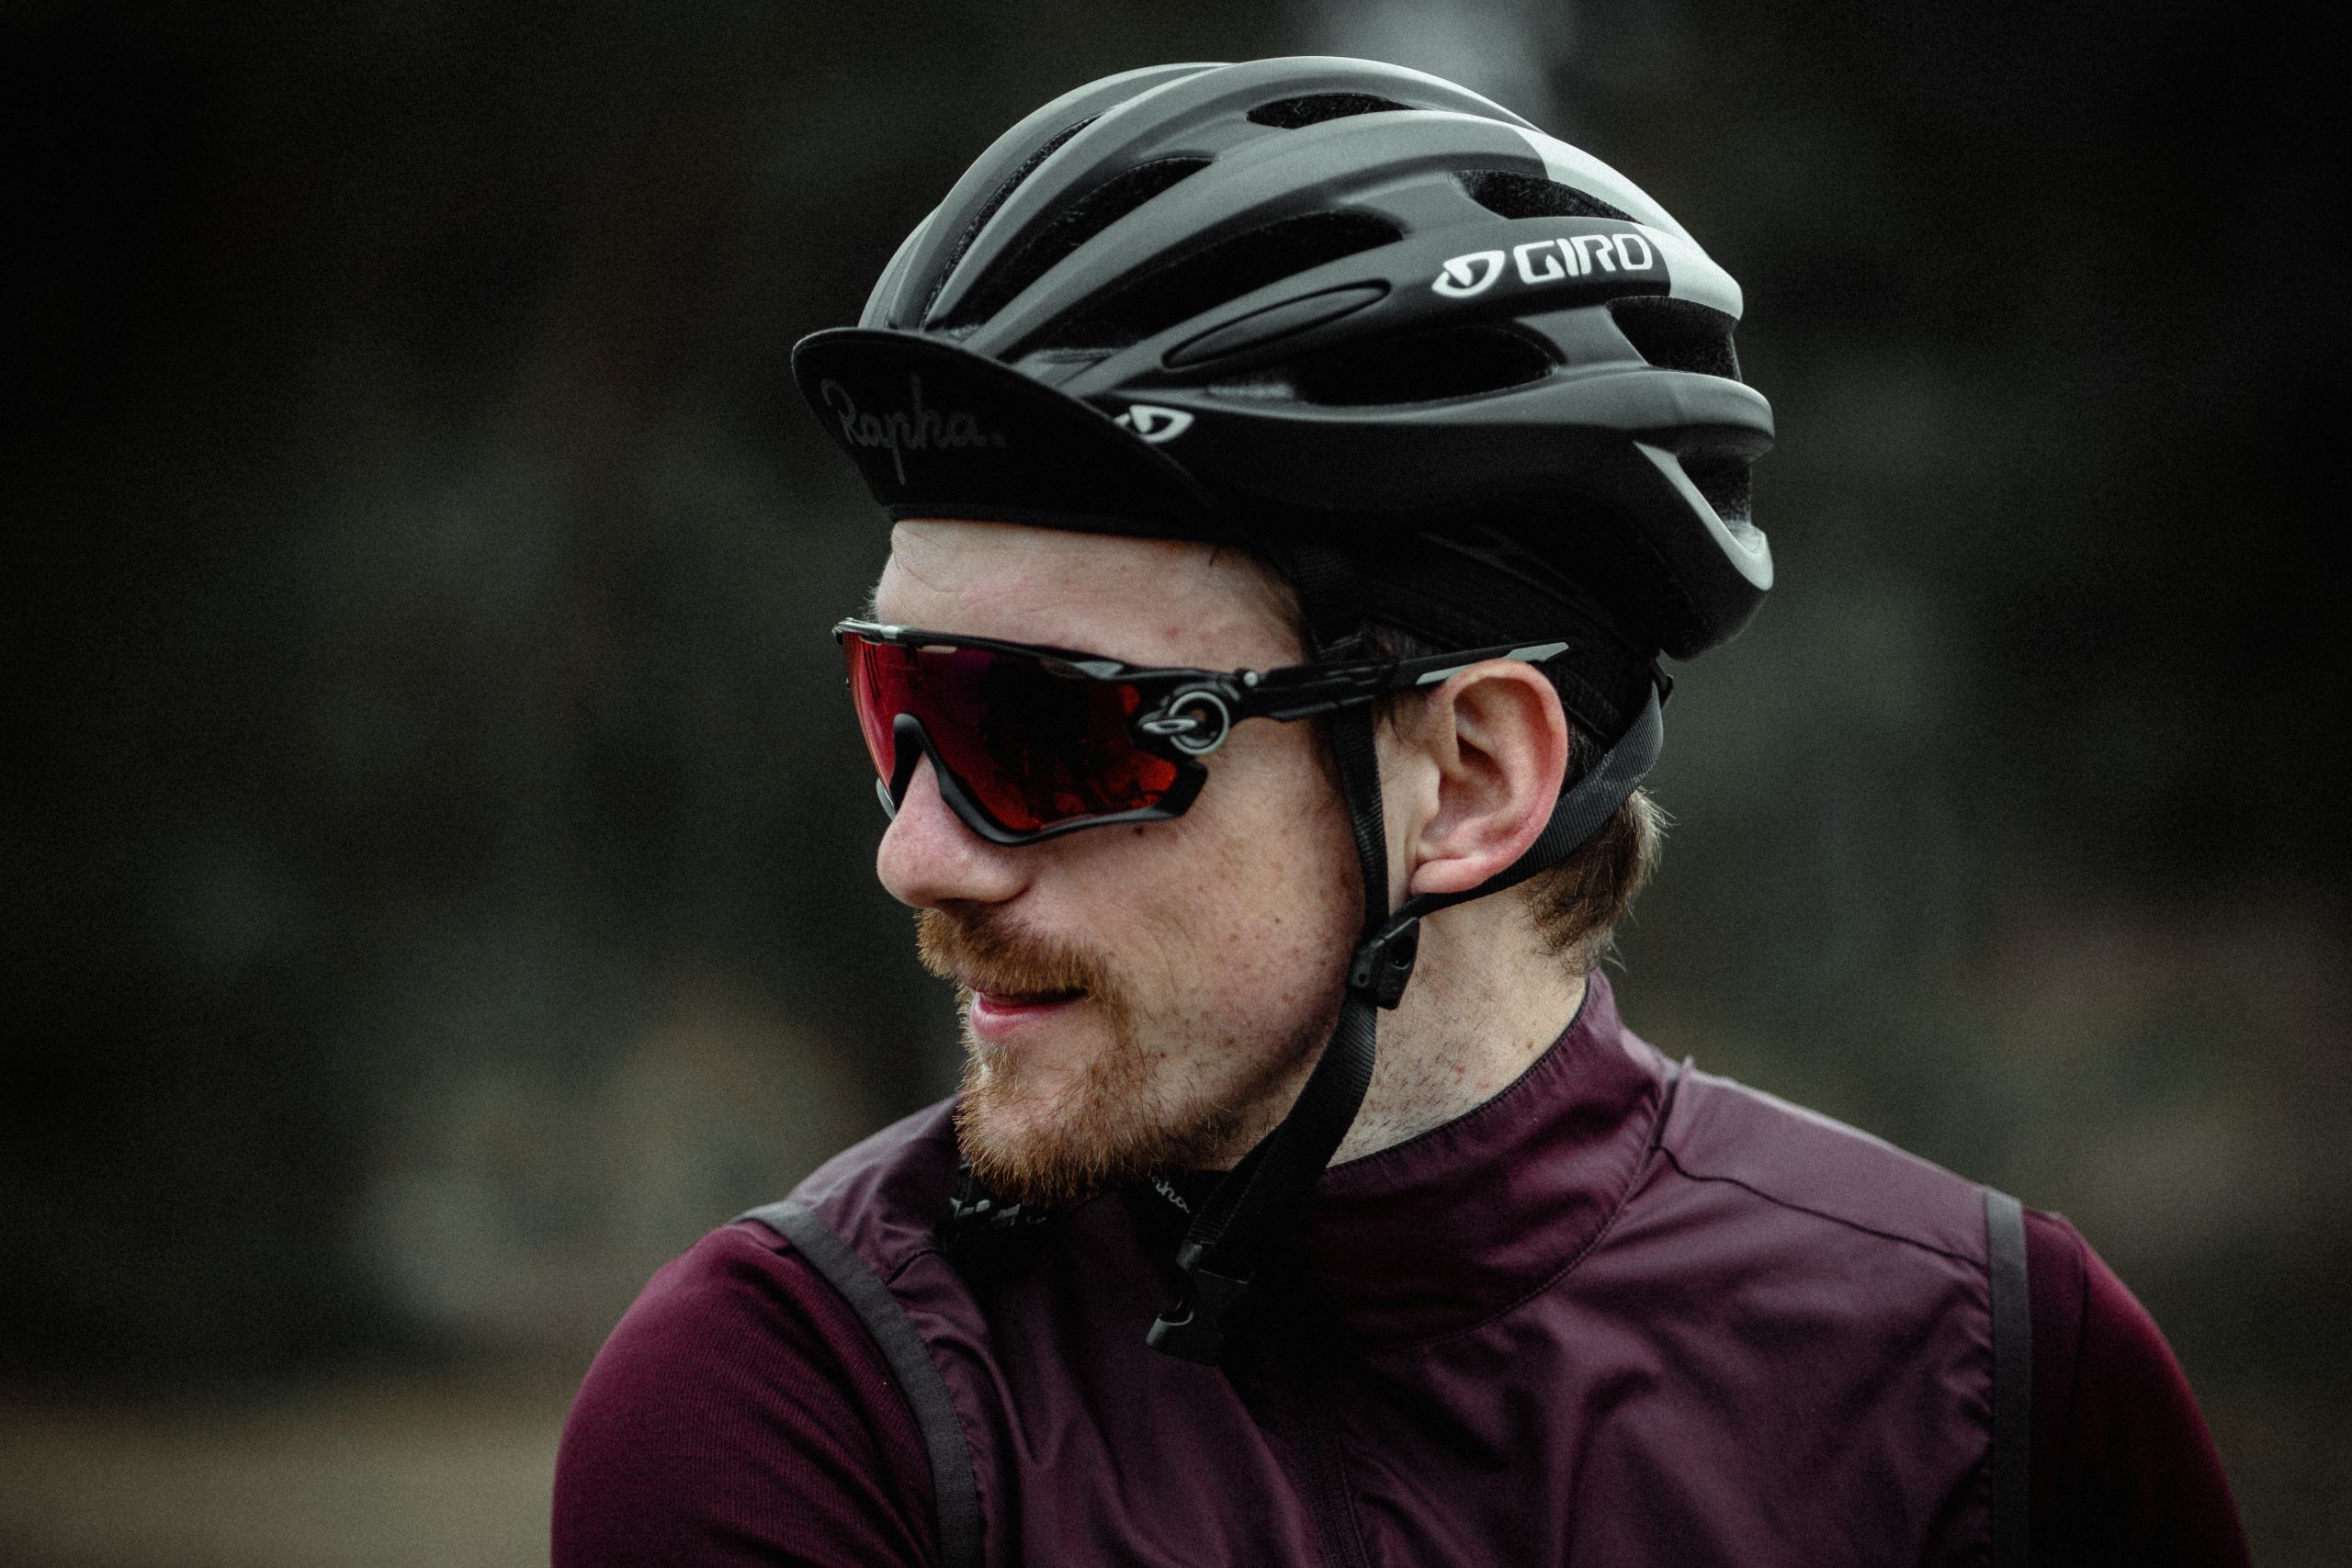 Radfahrer mit Sportbrille und Helm